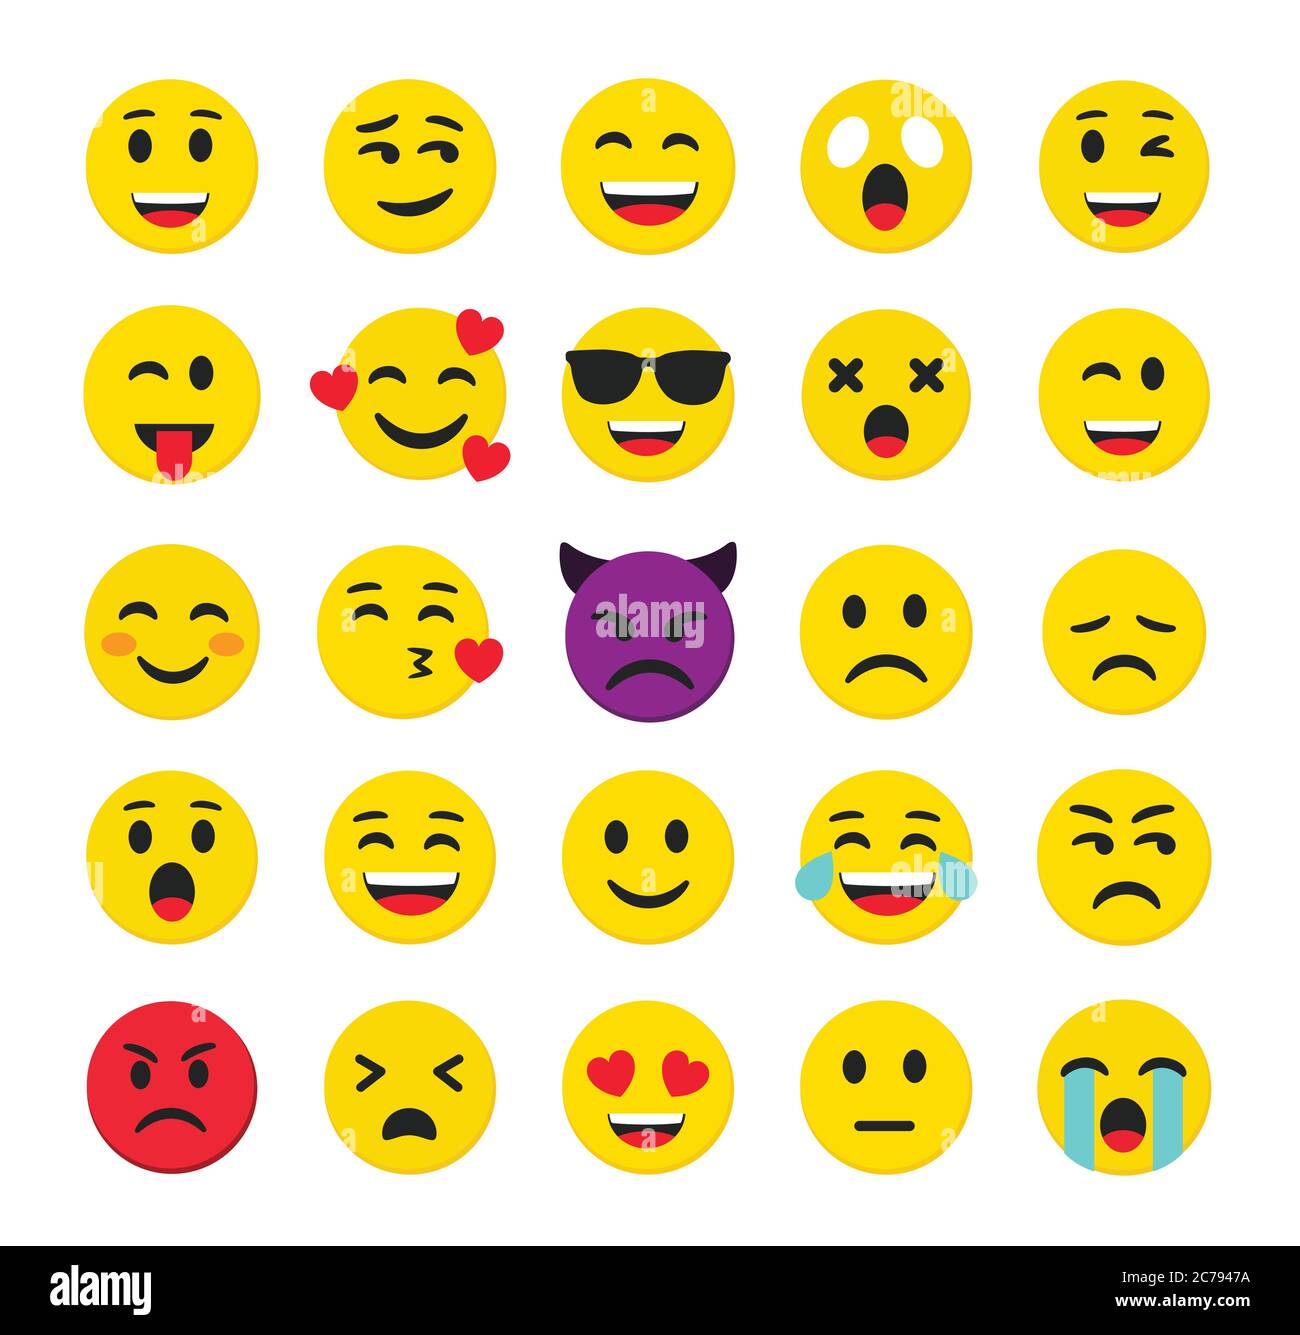 Emoticon di alta qualità isolate su sfondo bianco.Emoticons set.Emoji Collection vettoriale illustration.Yellow smiley.Emoji.Emoticons. Illustrazione Vettoriale